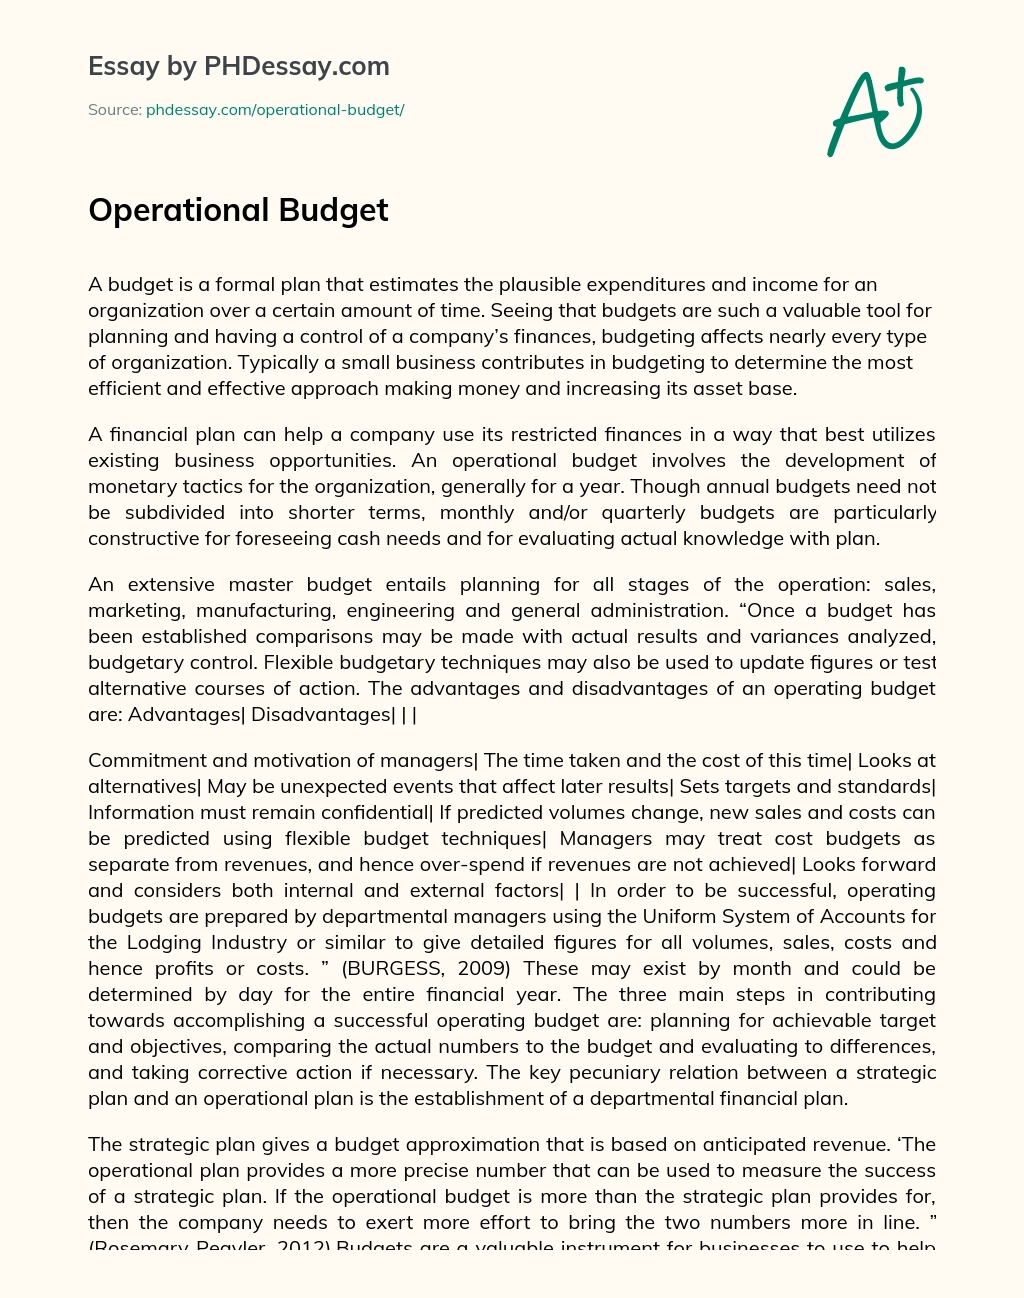 Operational Budget essay